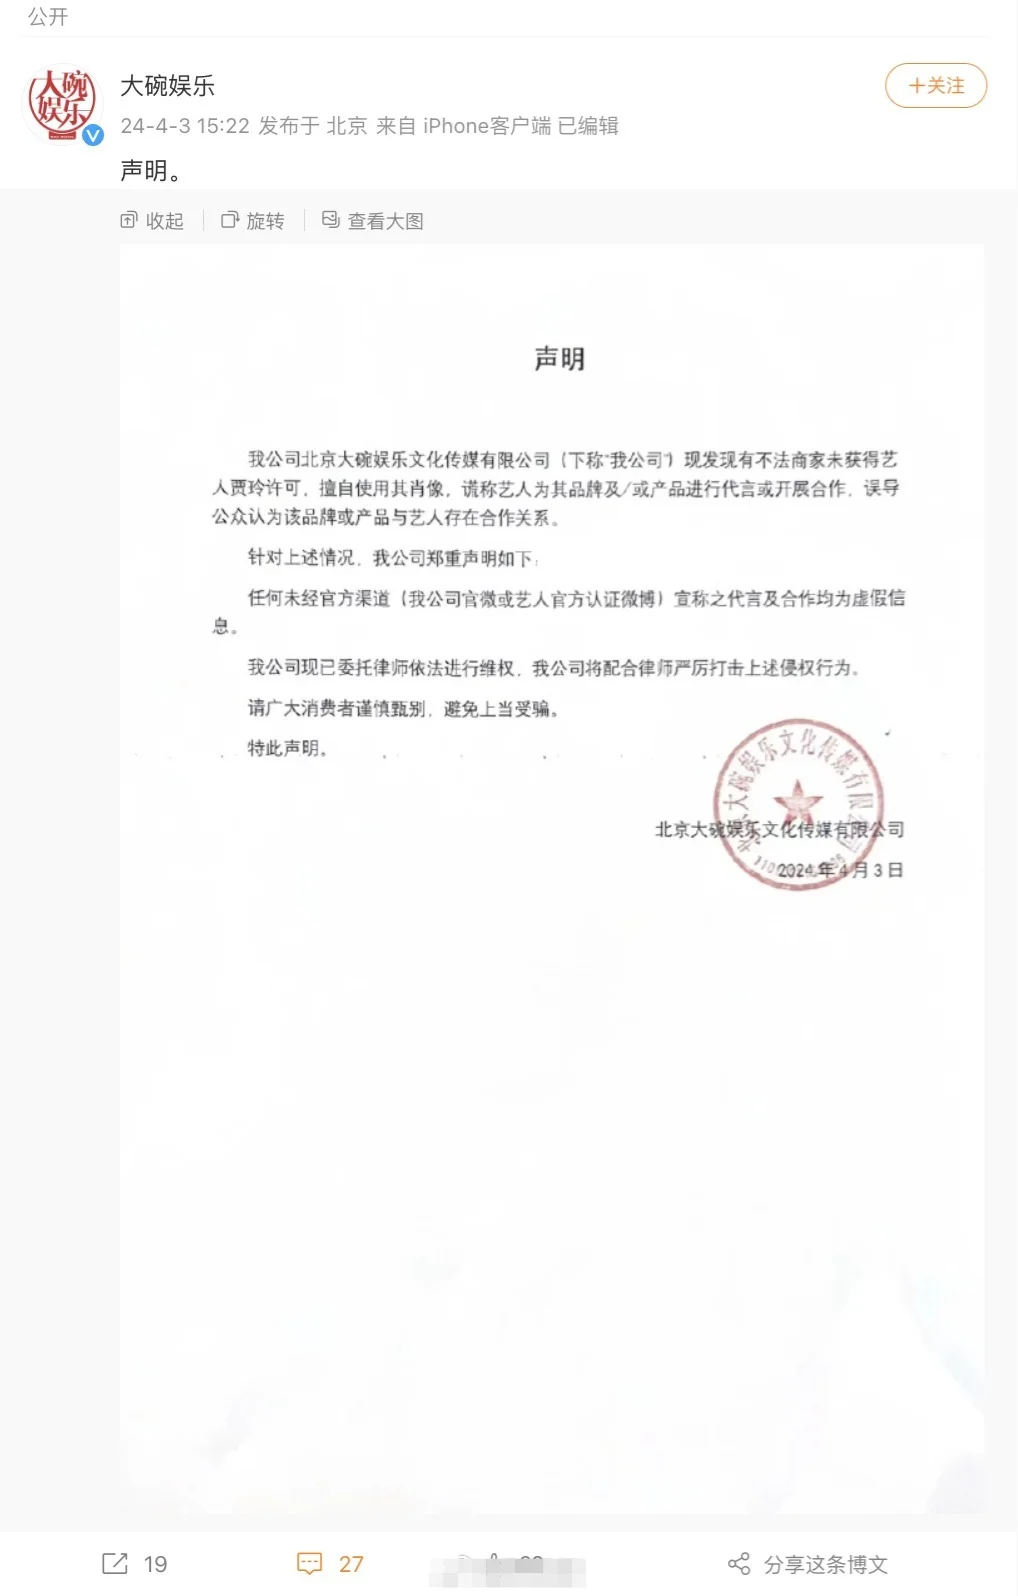 贾玲公司大碗娱乐发声明 谴责侵犯肖像权行为封面图